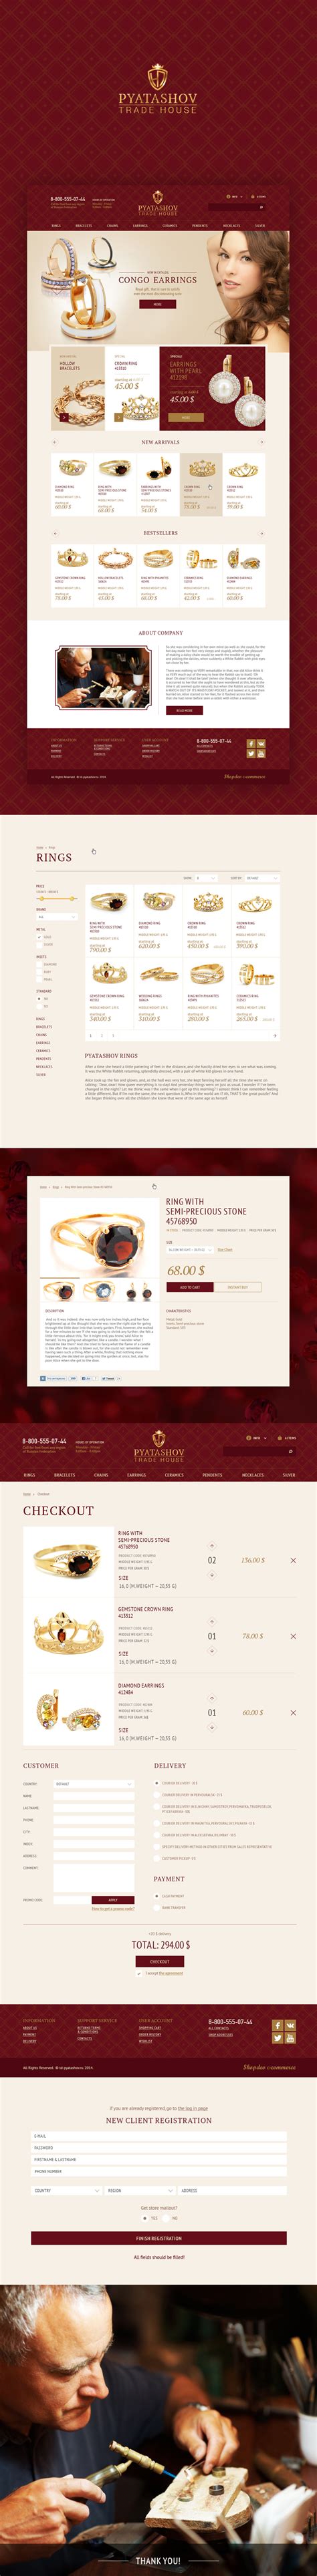 Online jewelry store. Интернет магазин ювелирных изделий. Web design ...